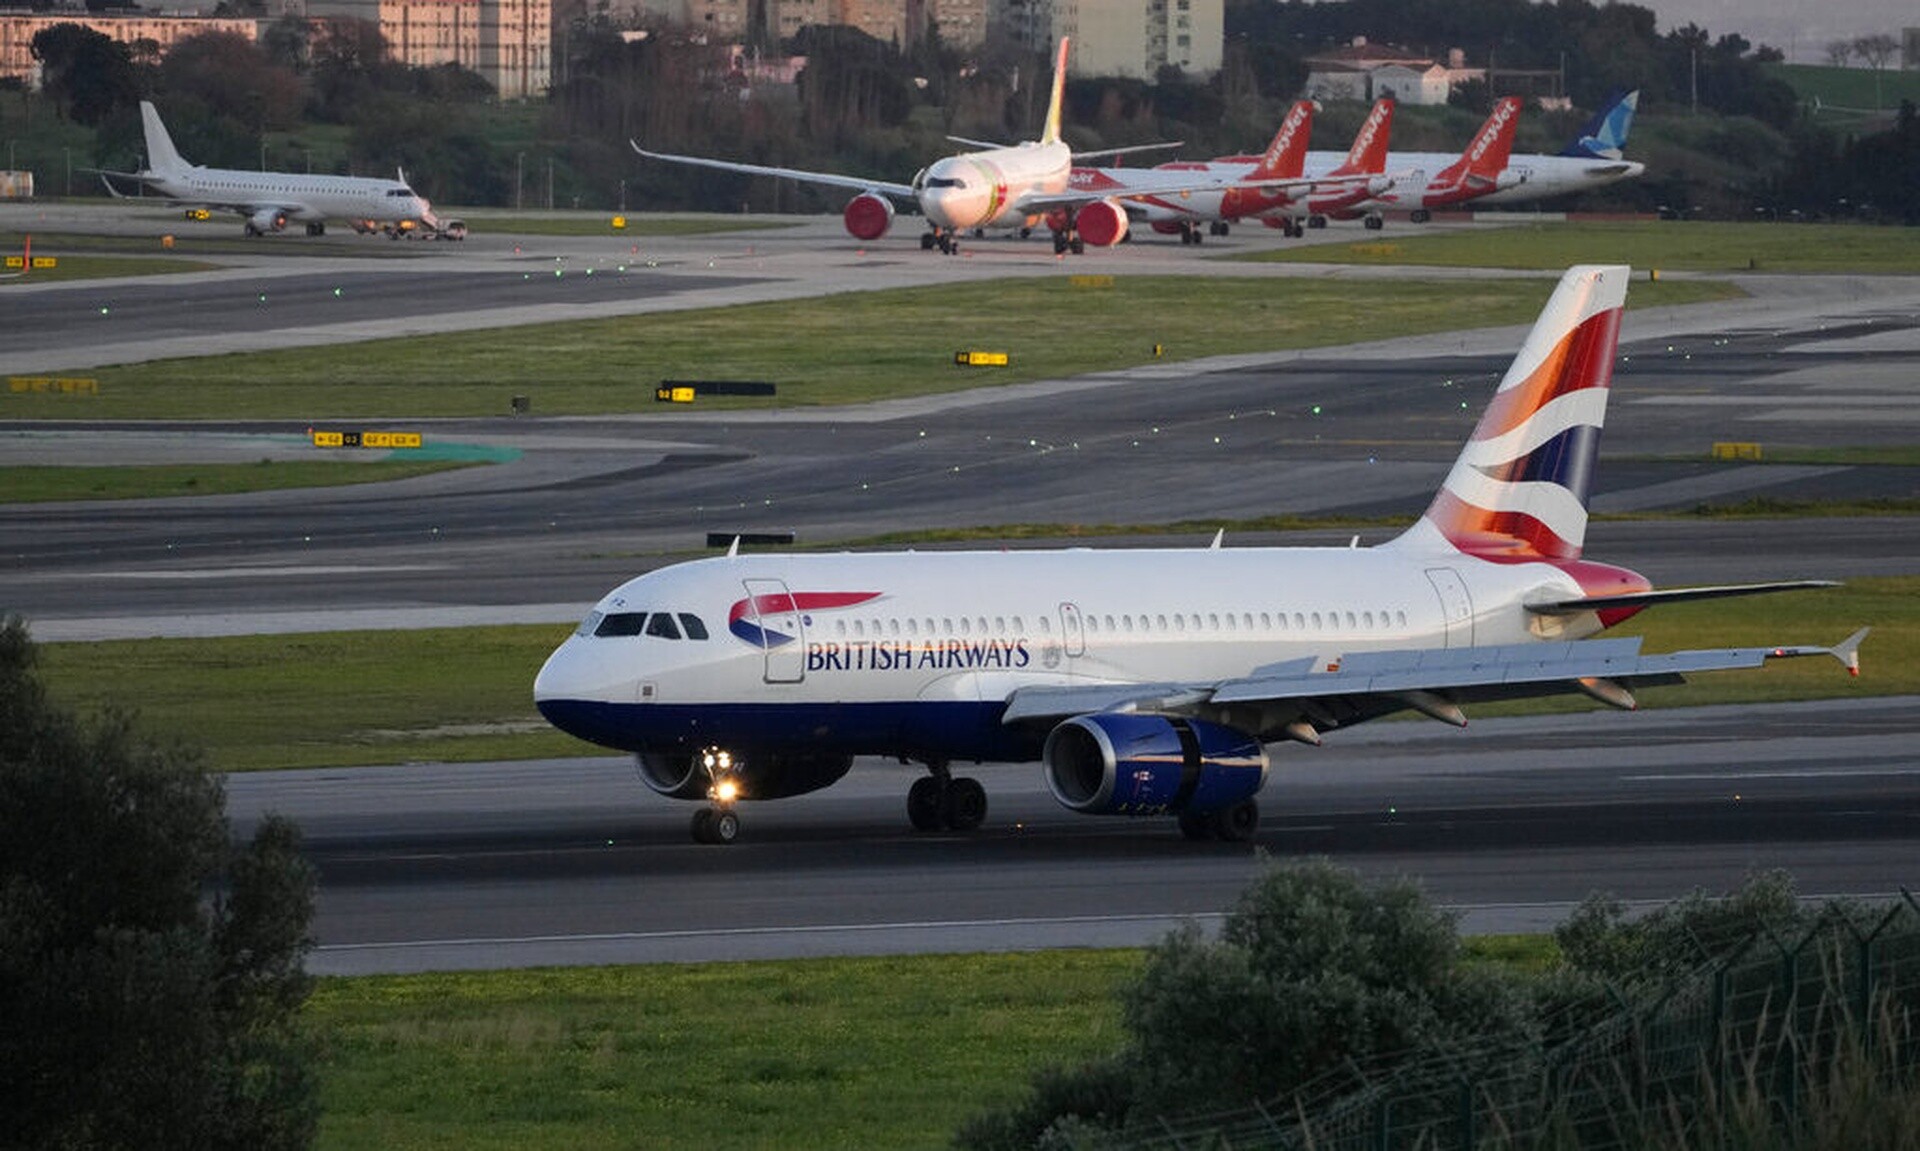 Παραλίγο τραγωδία σε πτήση της British Airways που εκτελούσε το Αθήνα - Λονδίνο – Drone πέρασε ξυστά